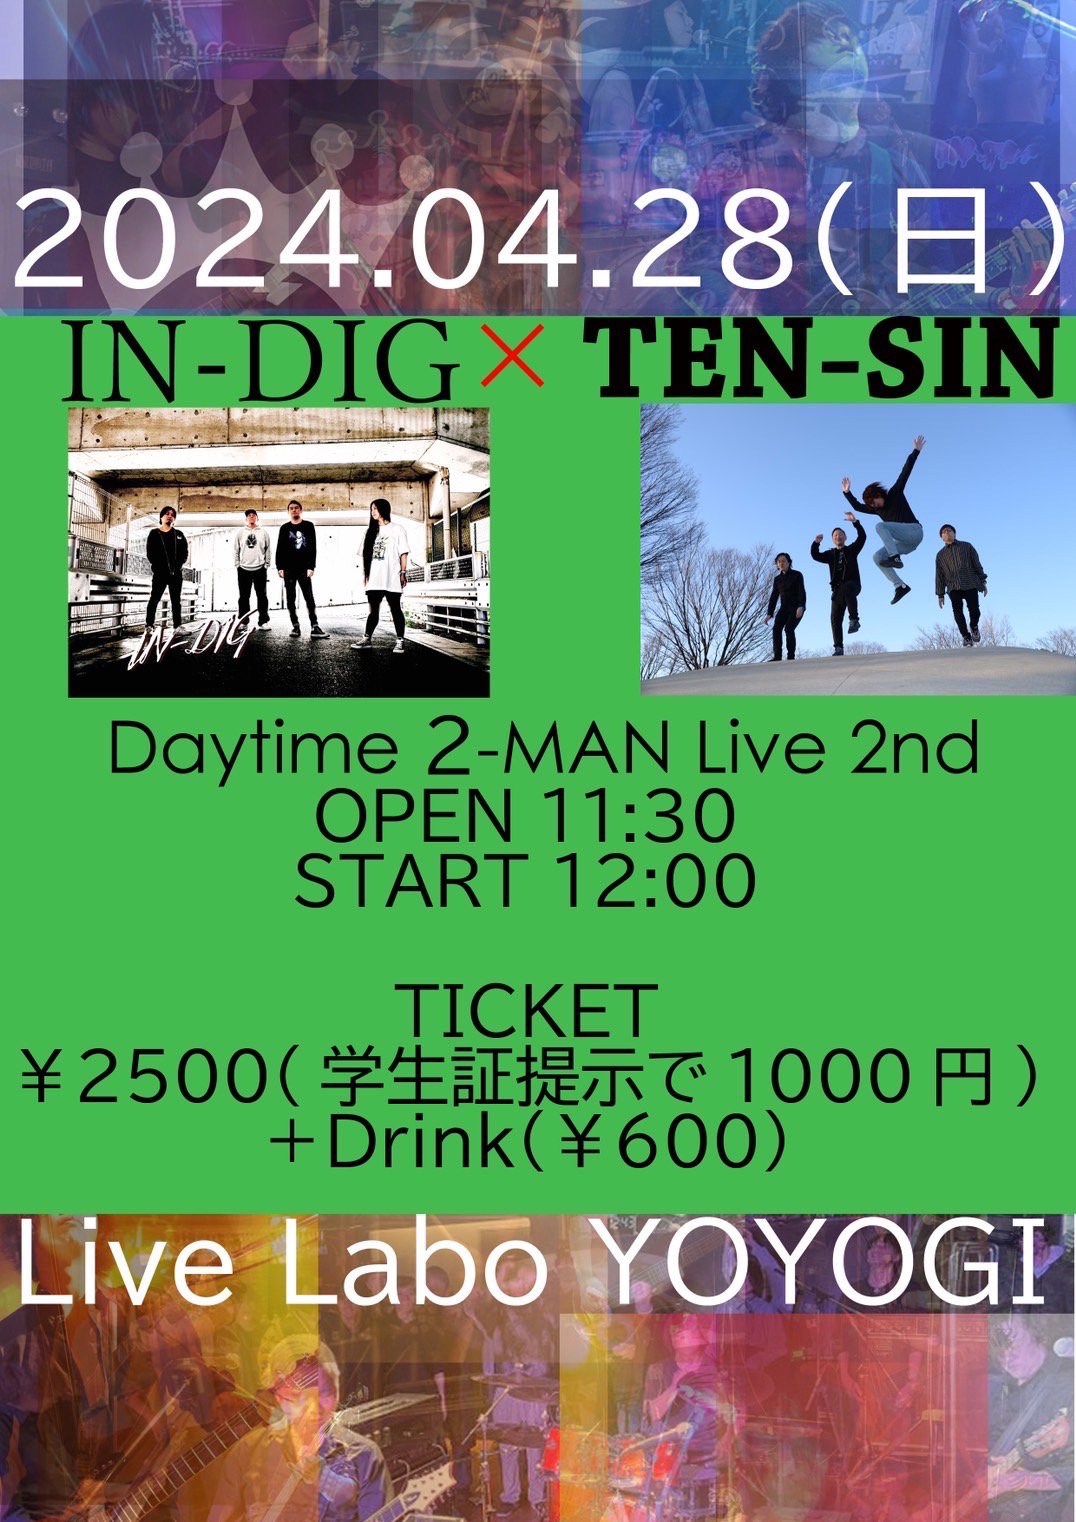 TEN-SIN×IN-DIG
Daytime-2-MAN Live 2nd